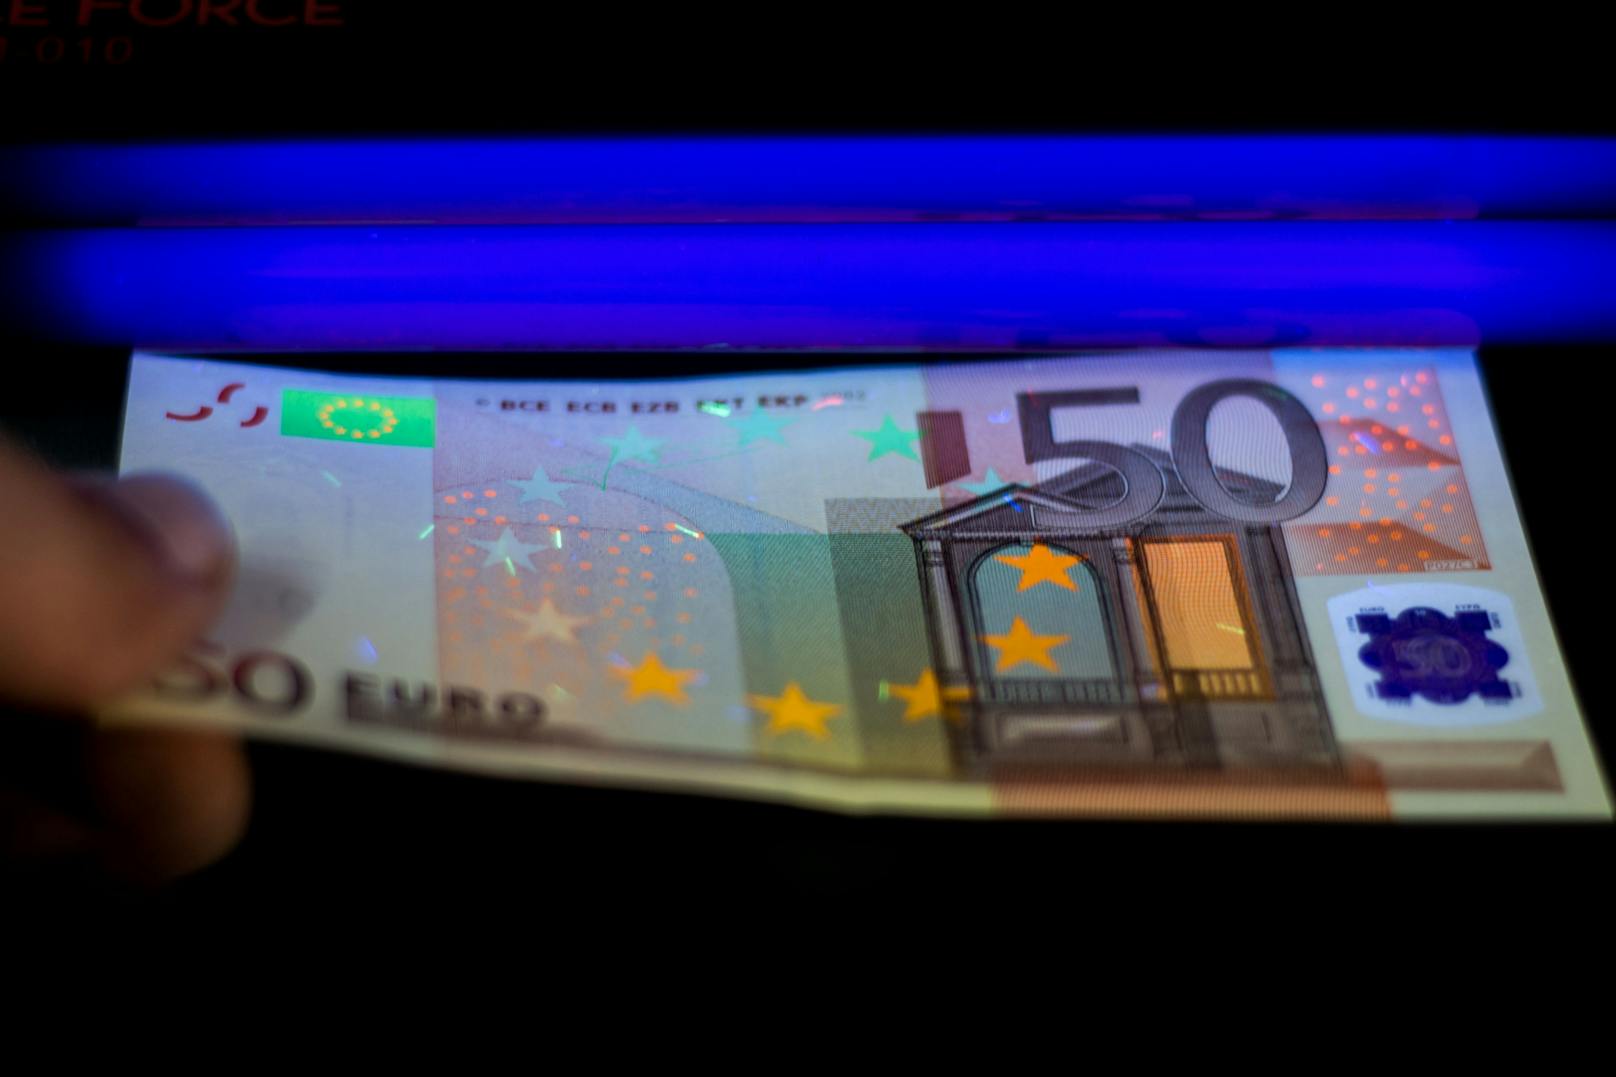 Falschgeld via Darknet nach Österreich verkauft